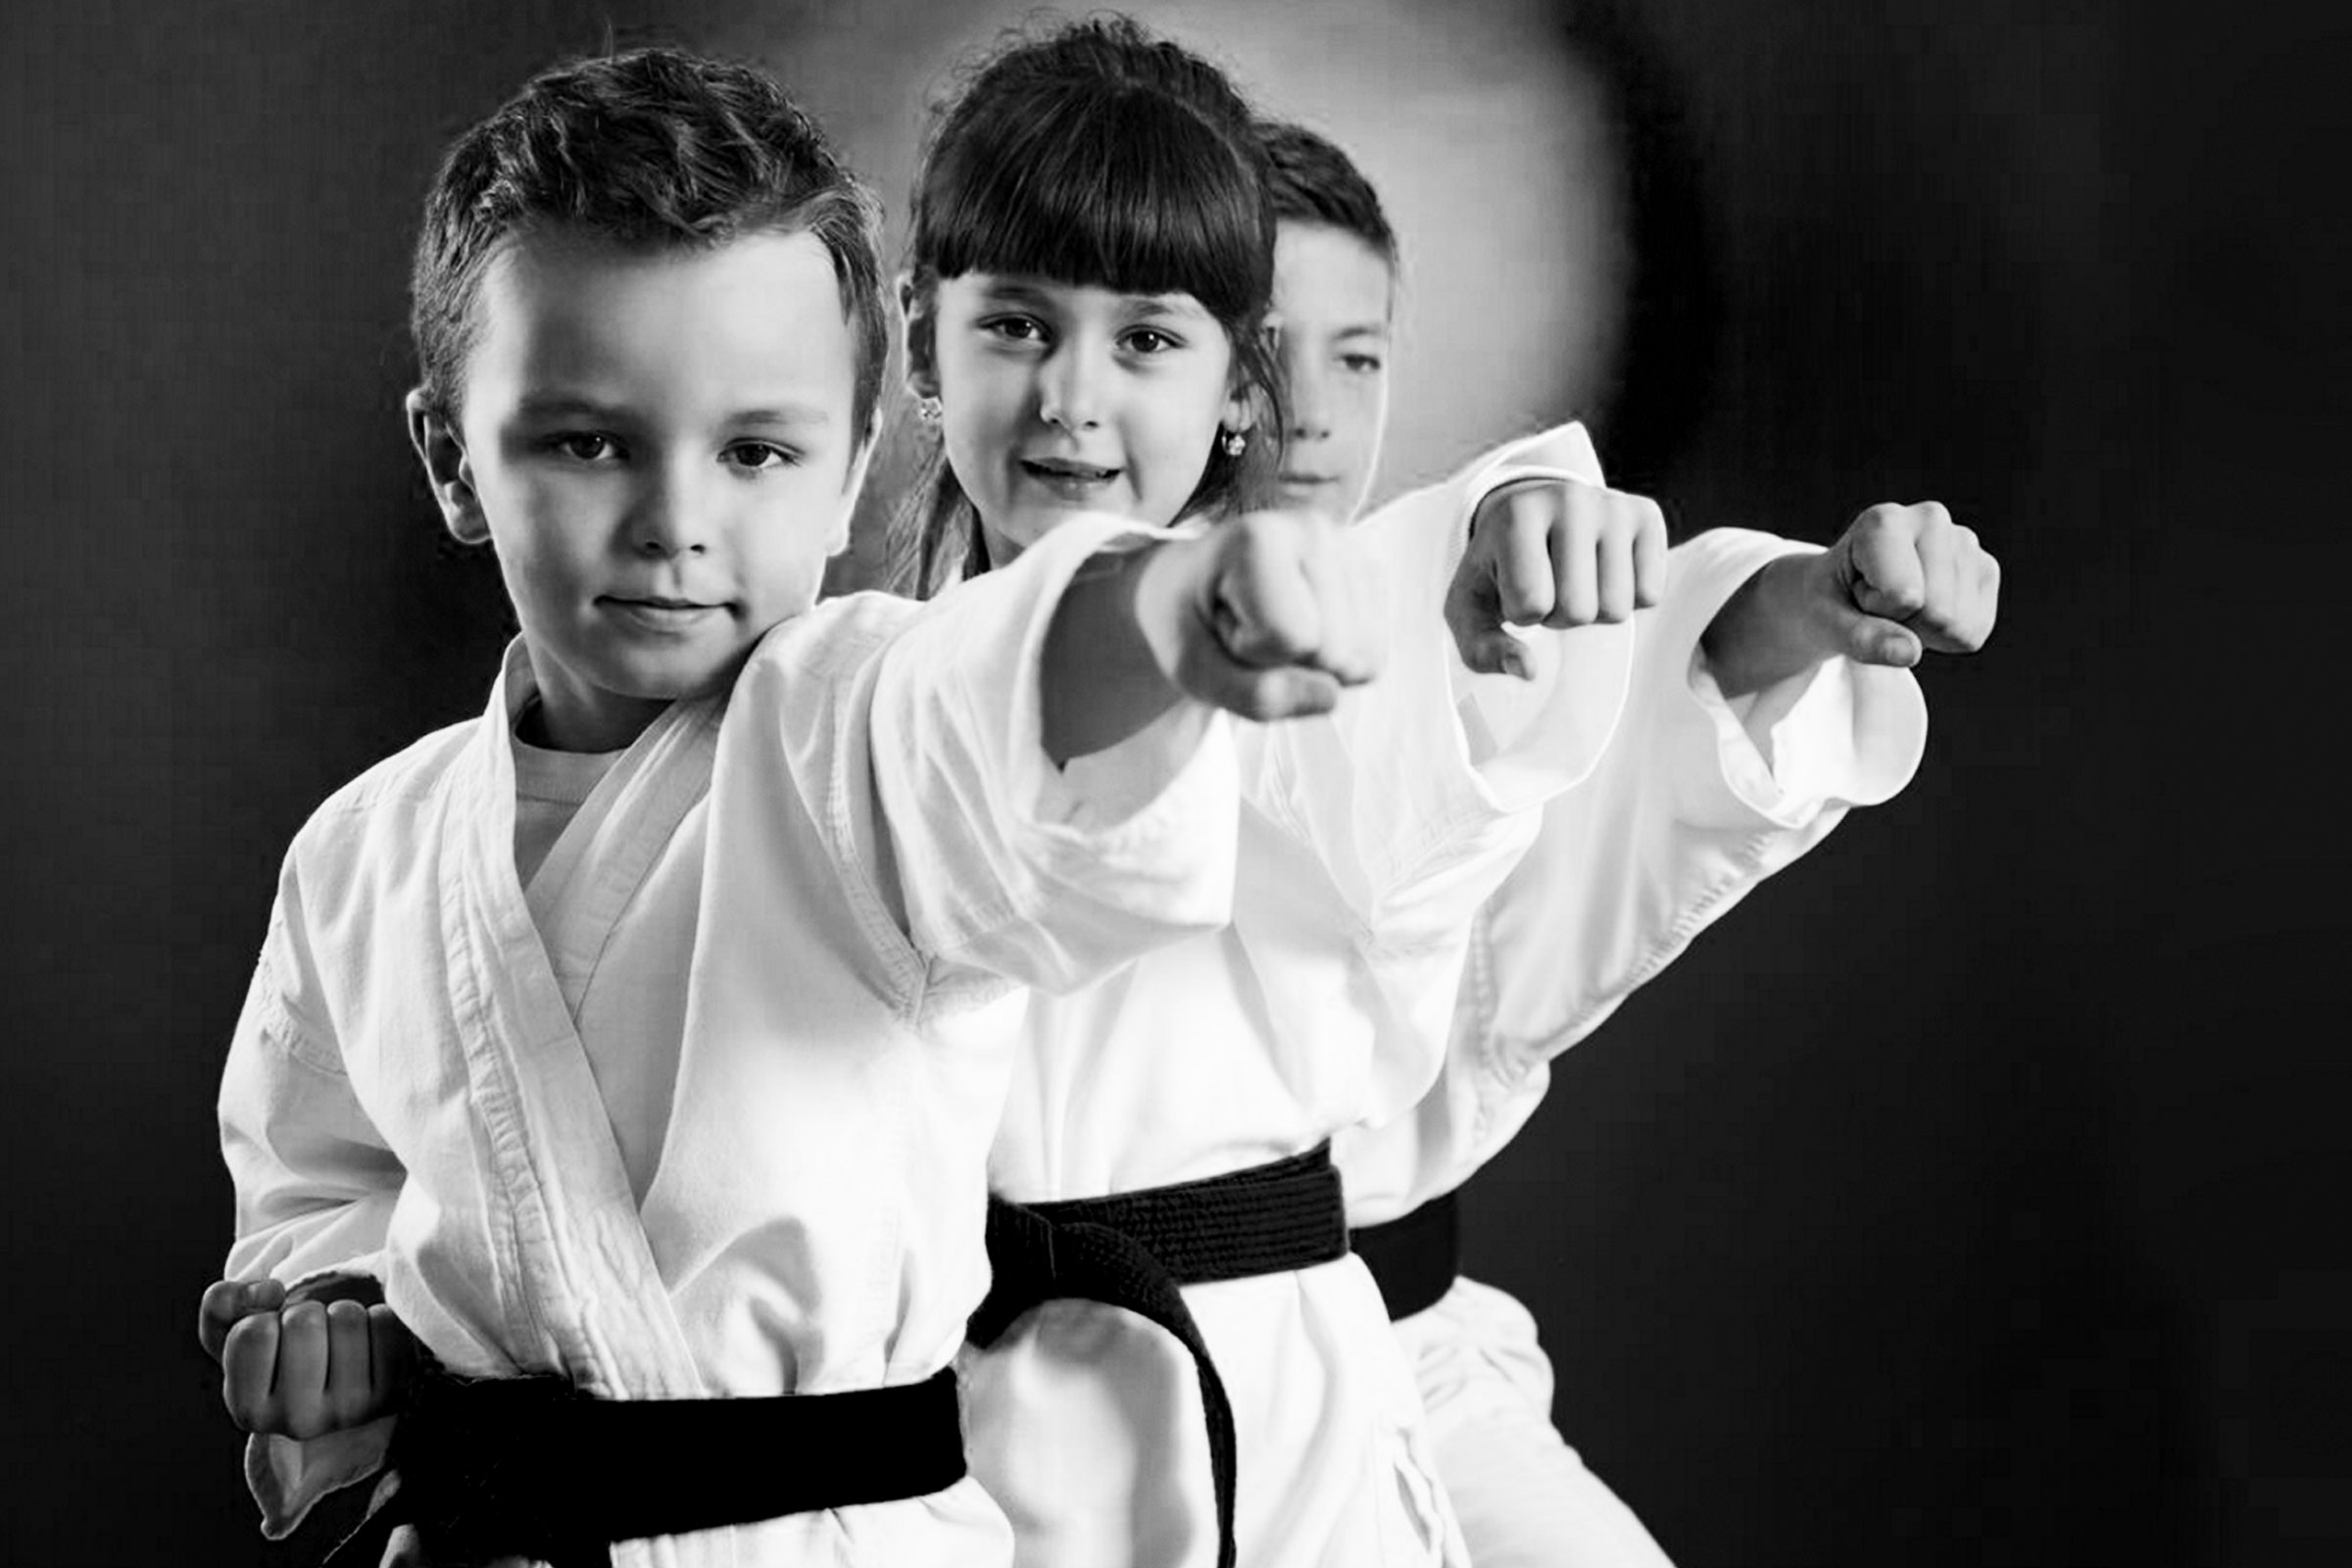 Taekwondo Infantil